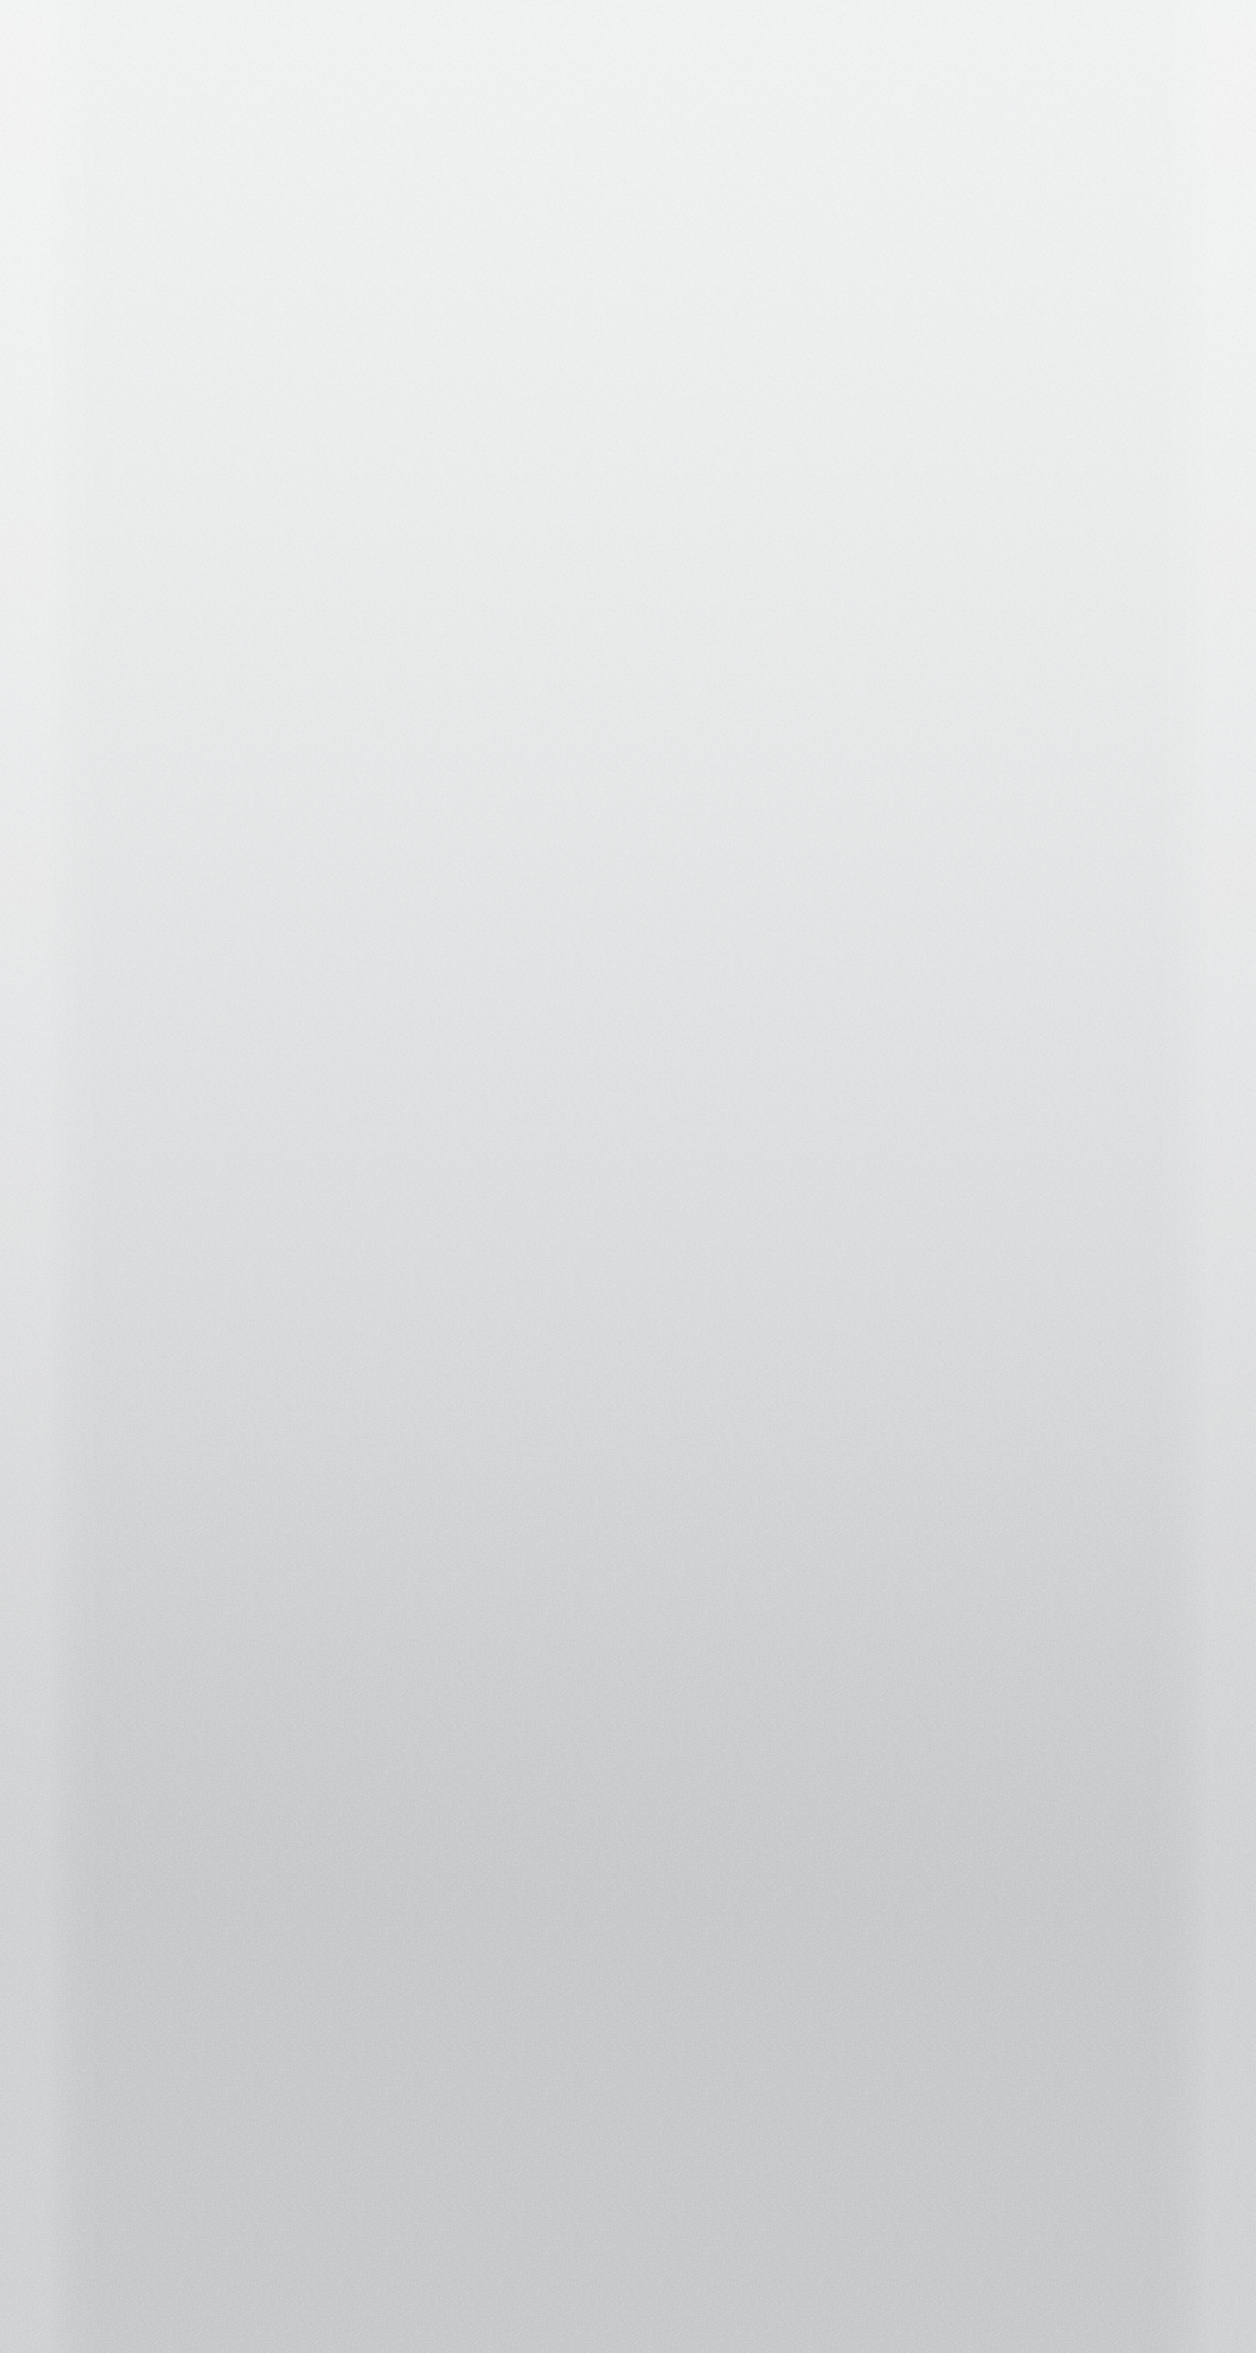 iphone 5s weiße tapete,weiß,braun,grau,linie,beige